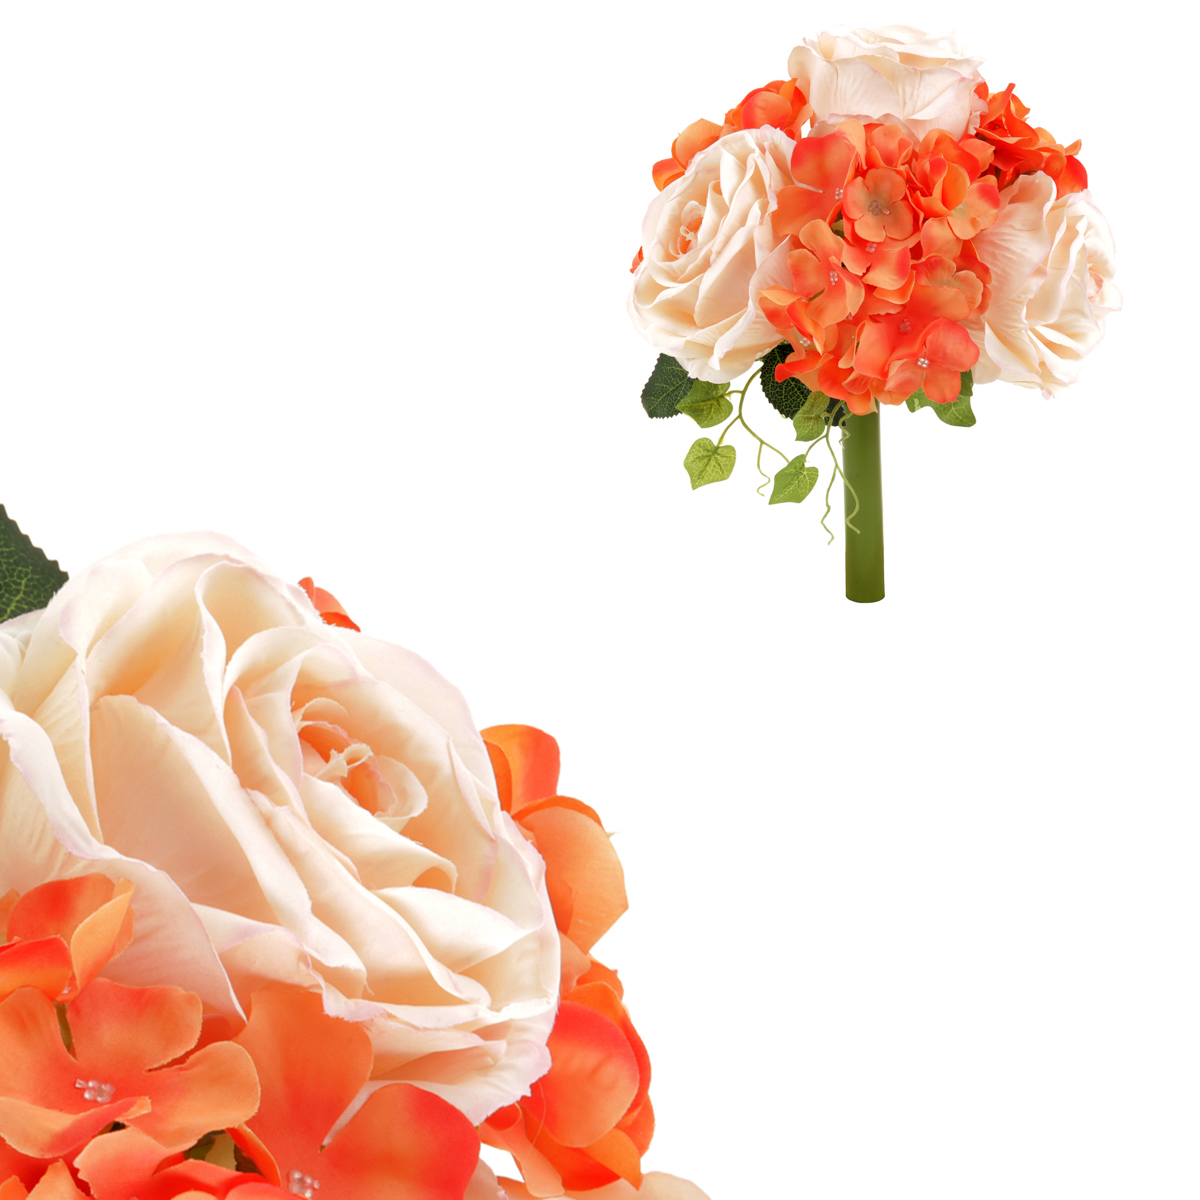 Hortenzie a růže, puget, barvy oranžová a smetanová. Květina umělá.